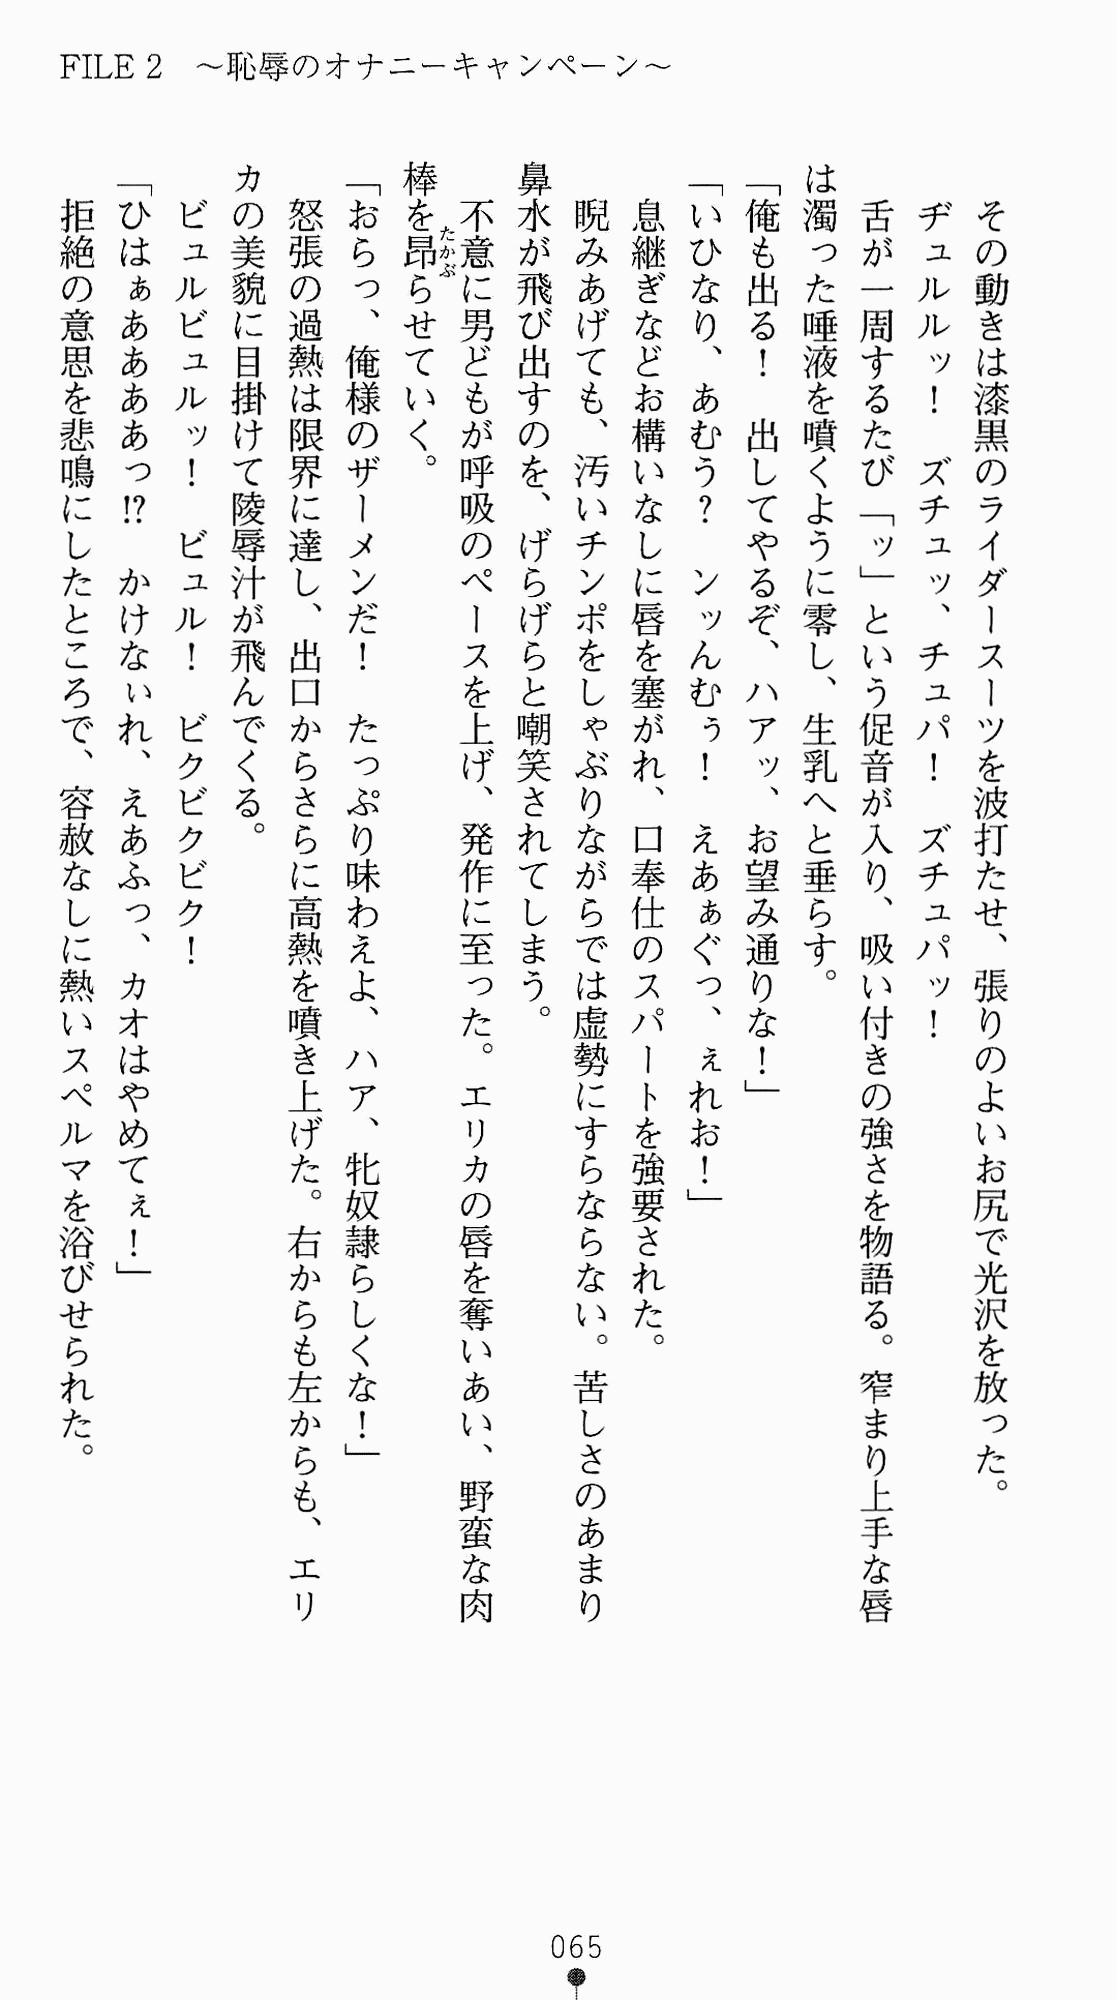 [Kagura Youko, Takahama Tarou] Shiritsu Tantei Takasuga Erika no Jikenbo 2 - Chijouha AV Satsuei 24-ji 80